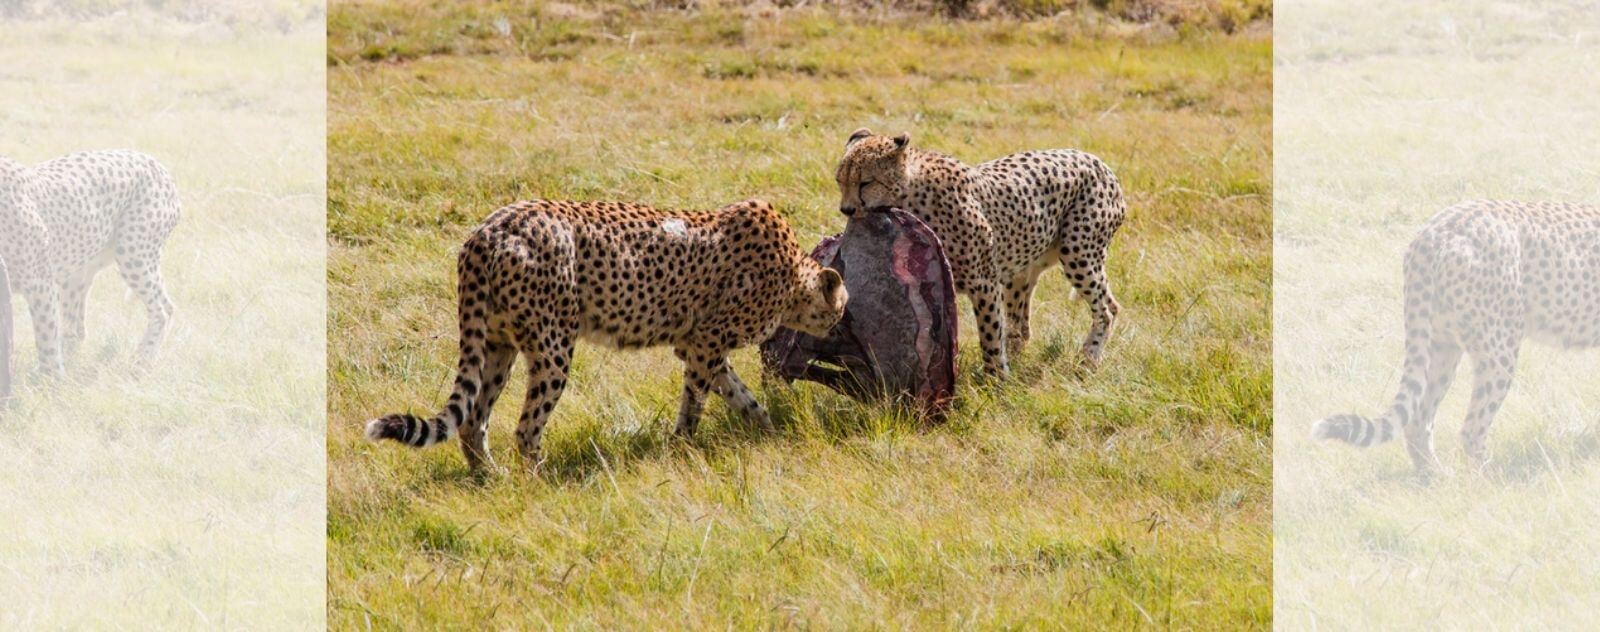 Dos guepardos en la sabana africana cazando y comiendo un trozo de ñu y antílope con carne roja